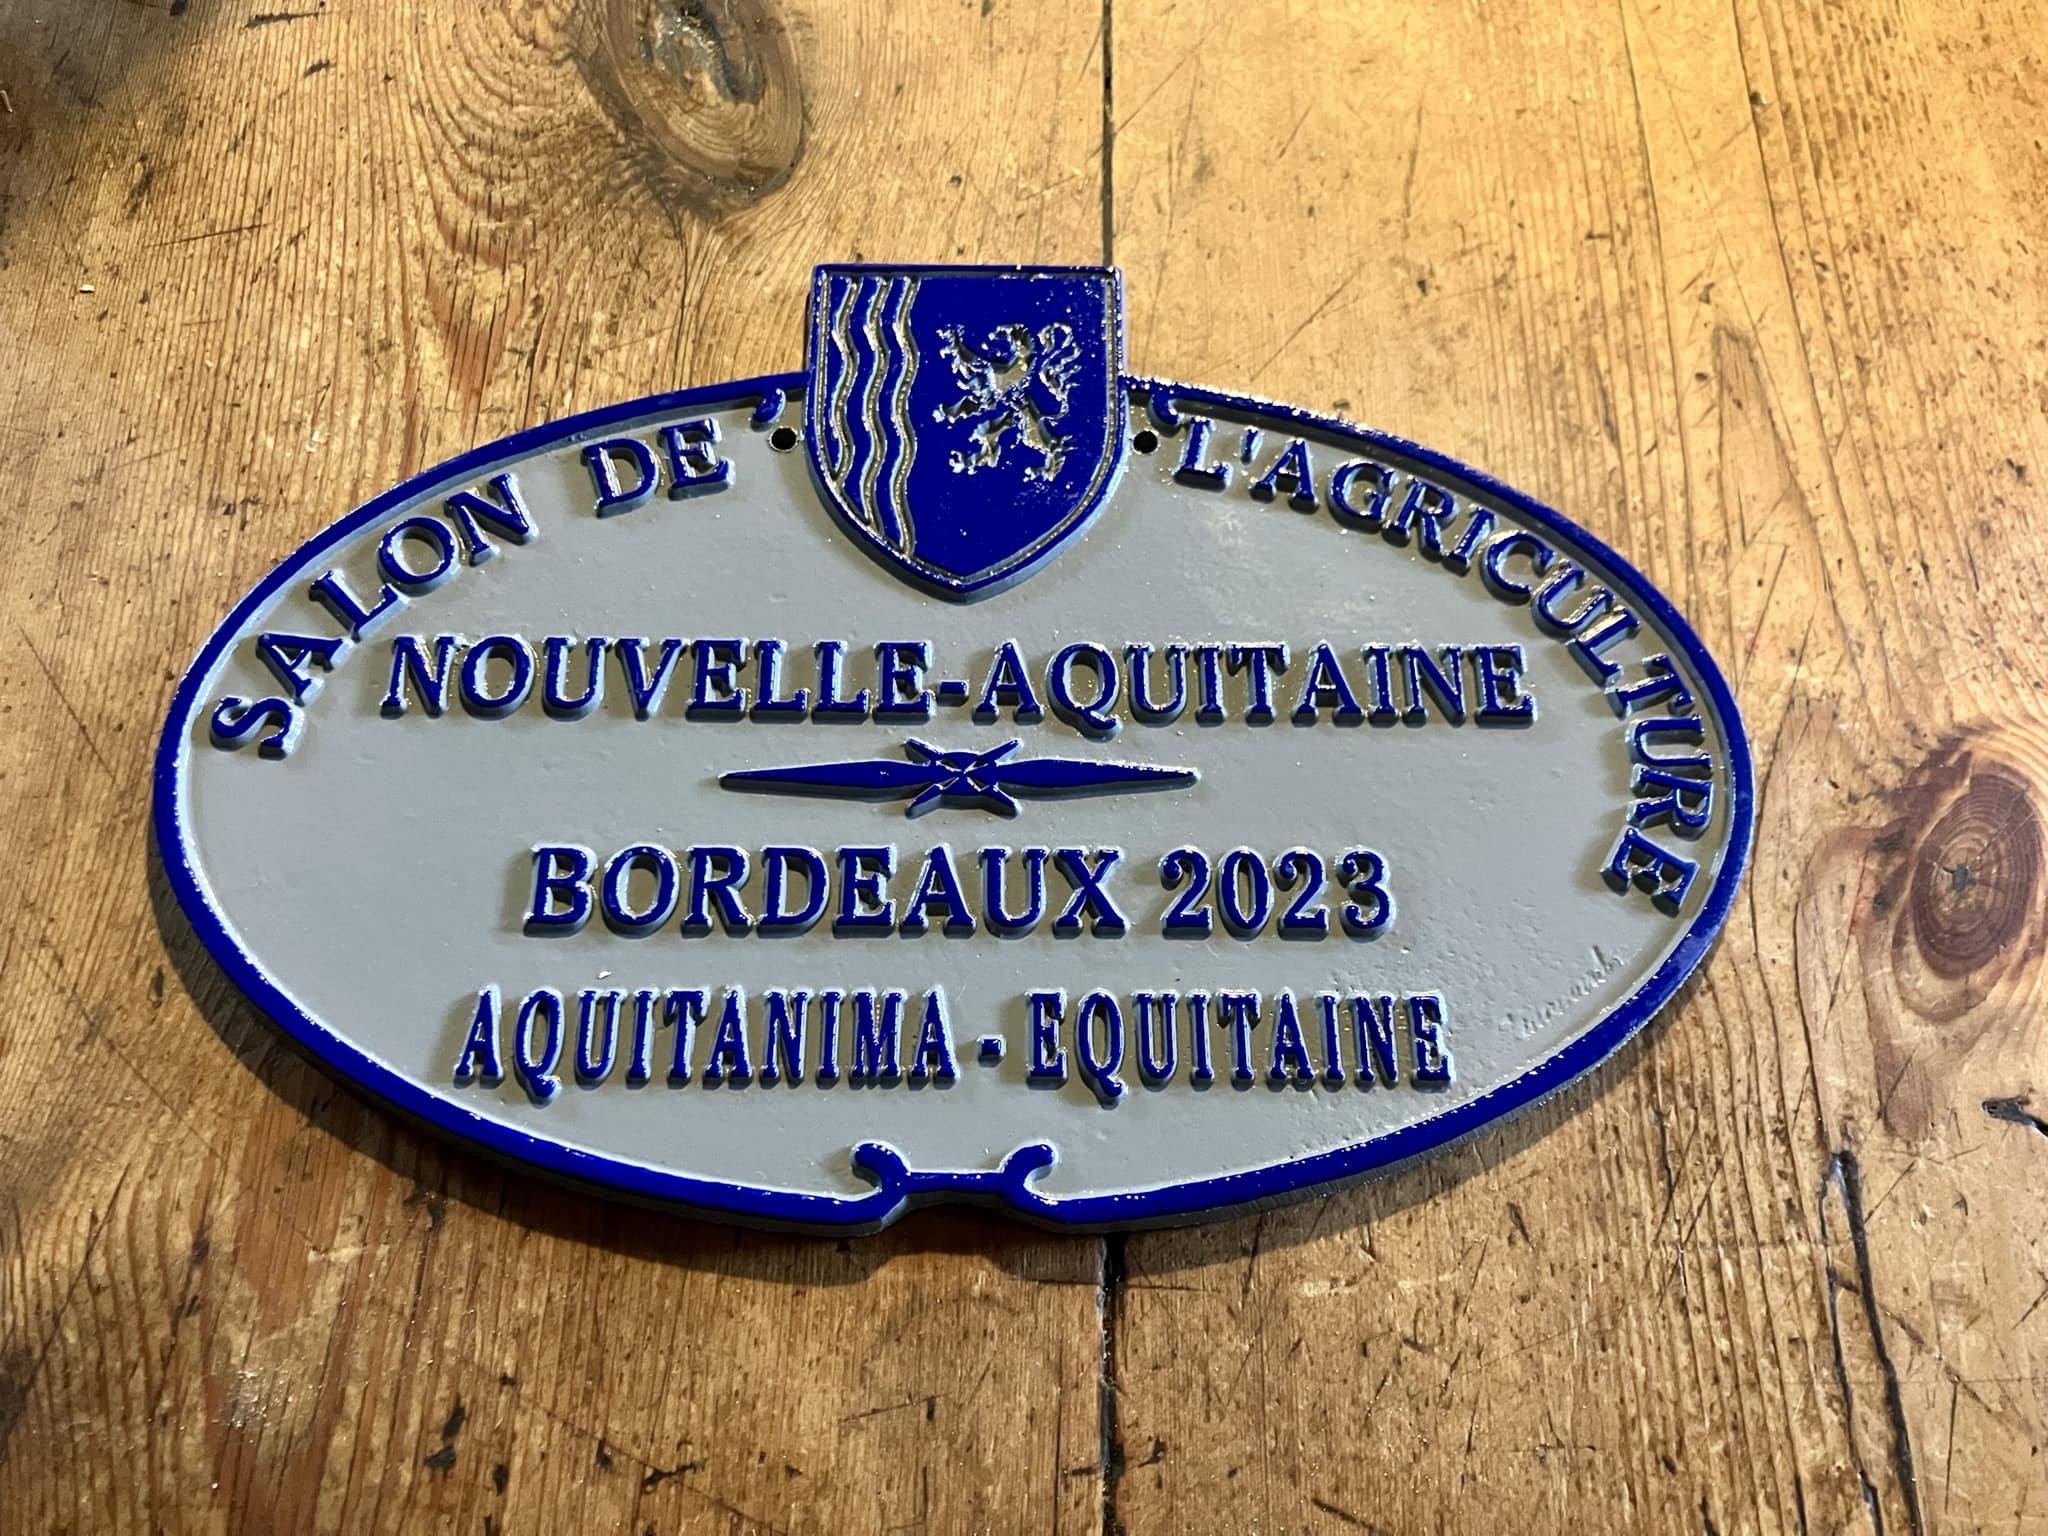 Salon de l’agriculture de Bordeaux 2023